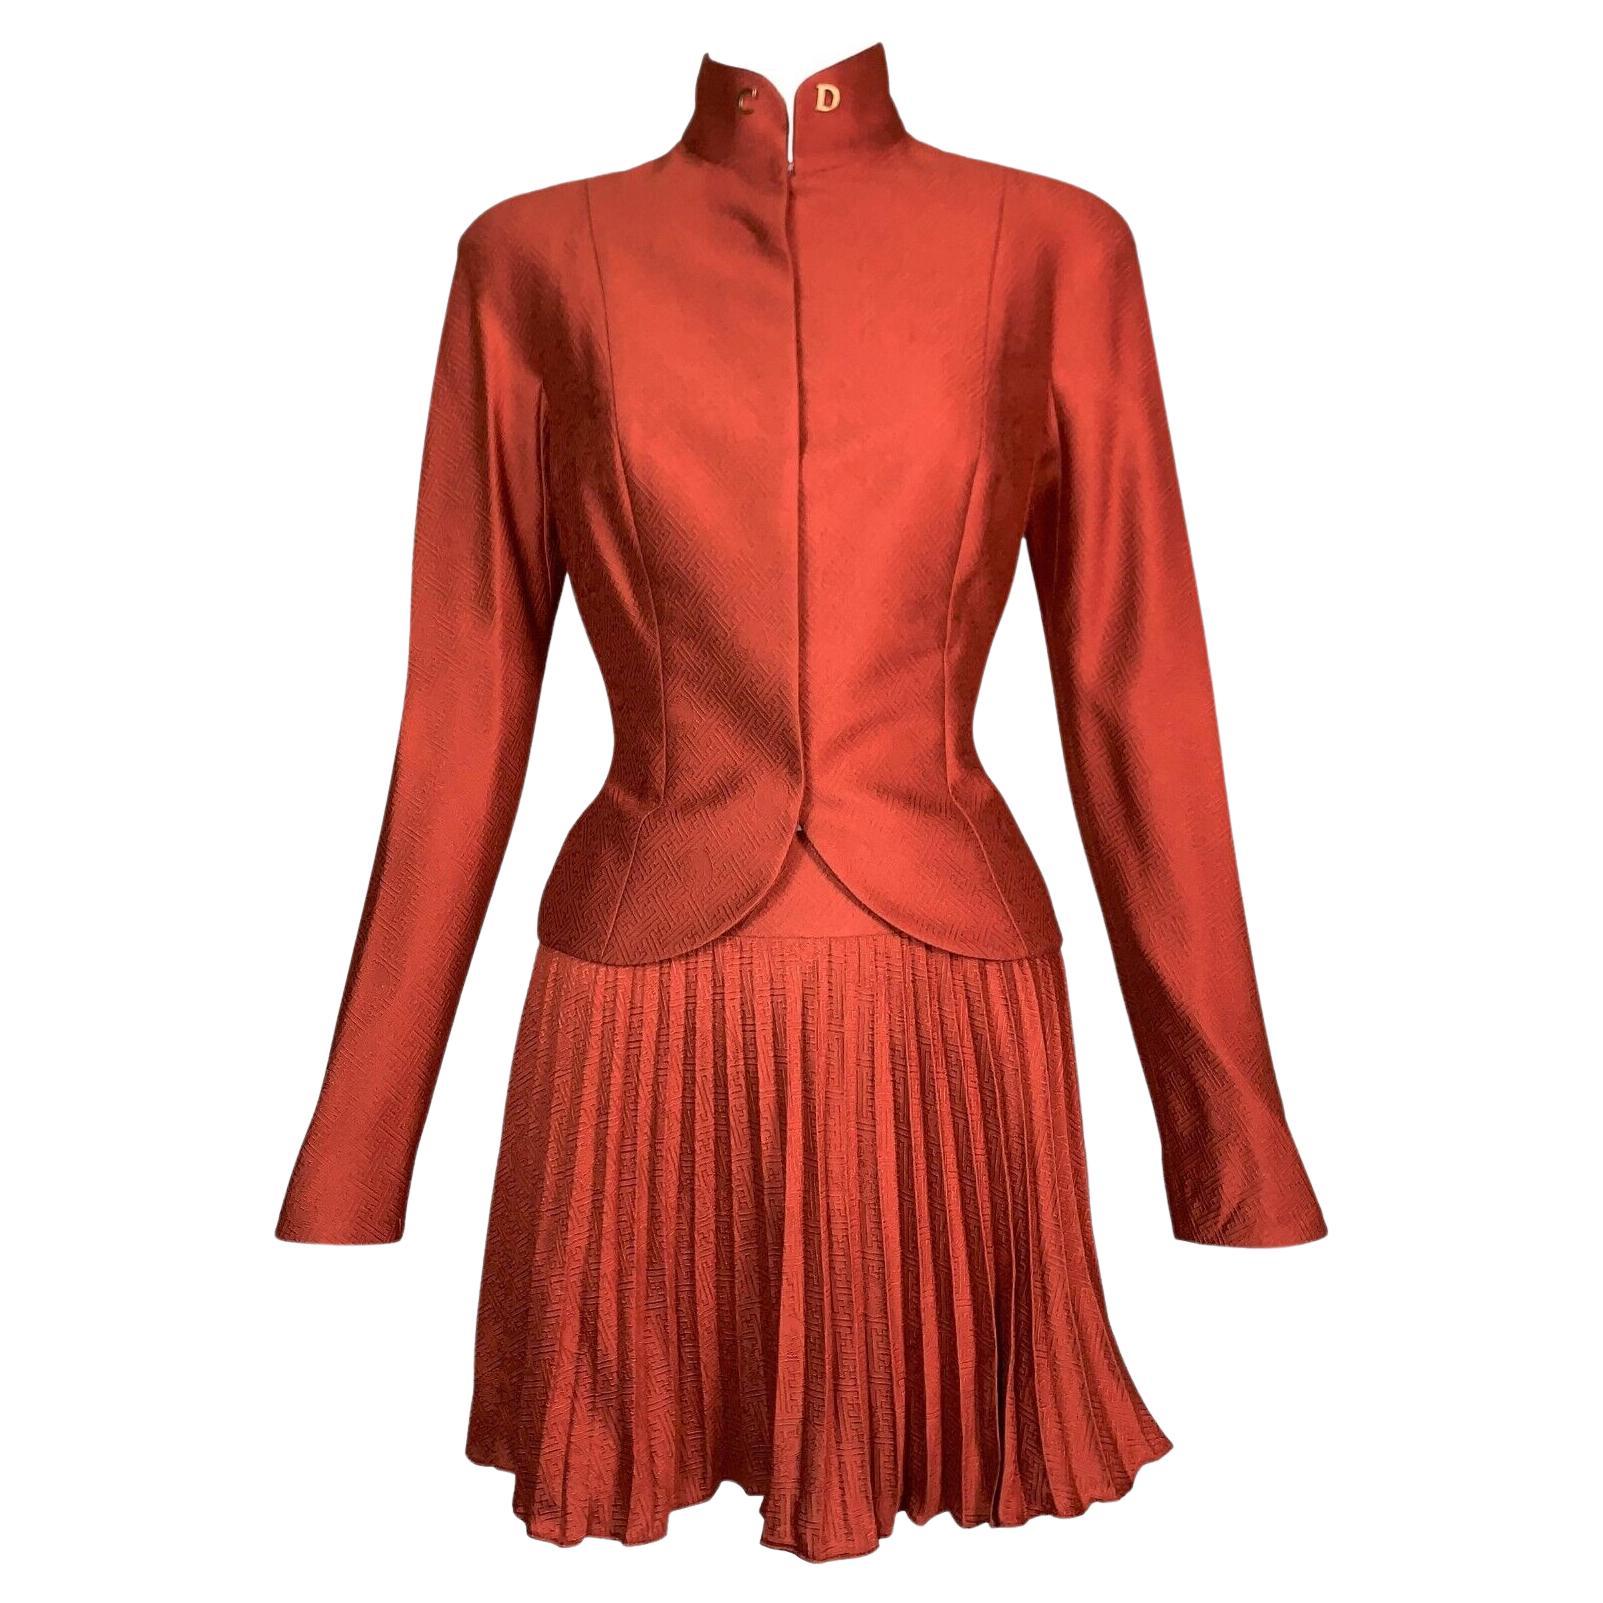 NWT S/S 1999 Christian Dior John Galliano Runway Chinoiserie Orange Skirt Suit